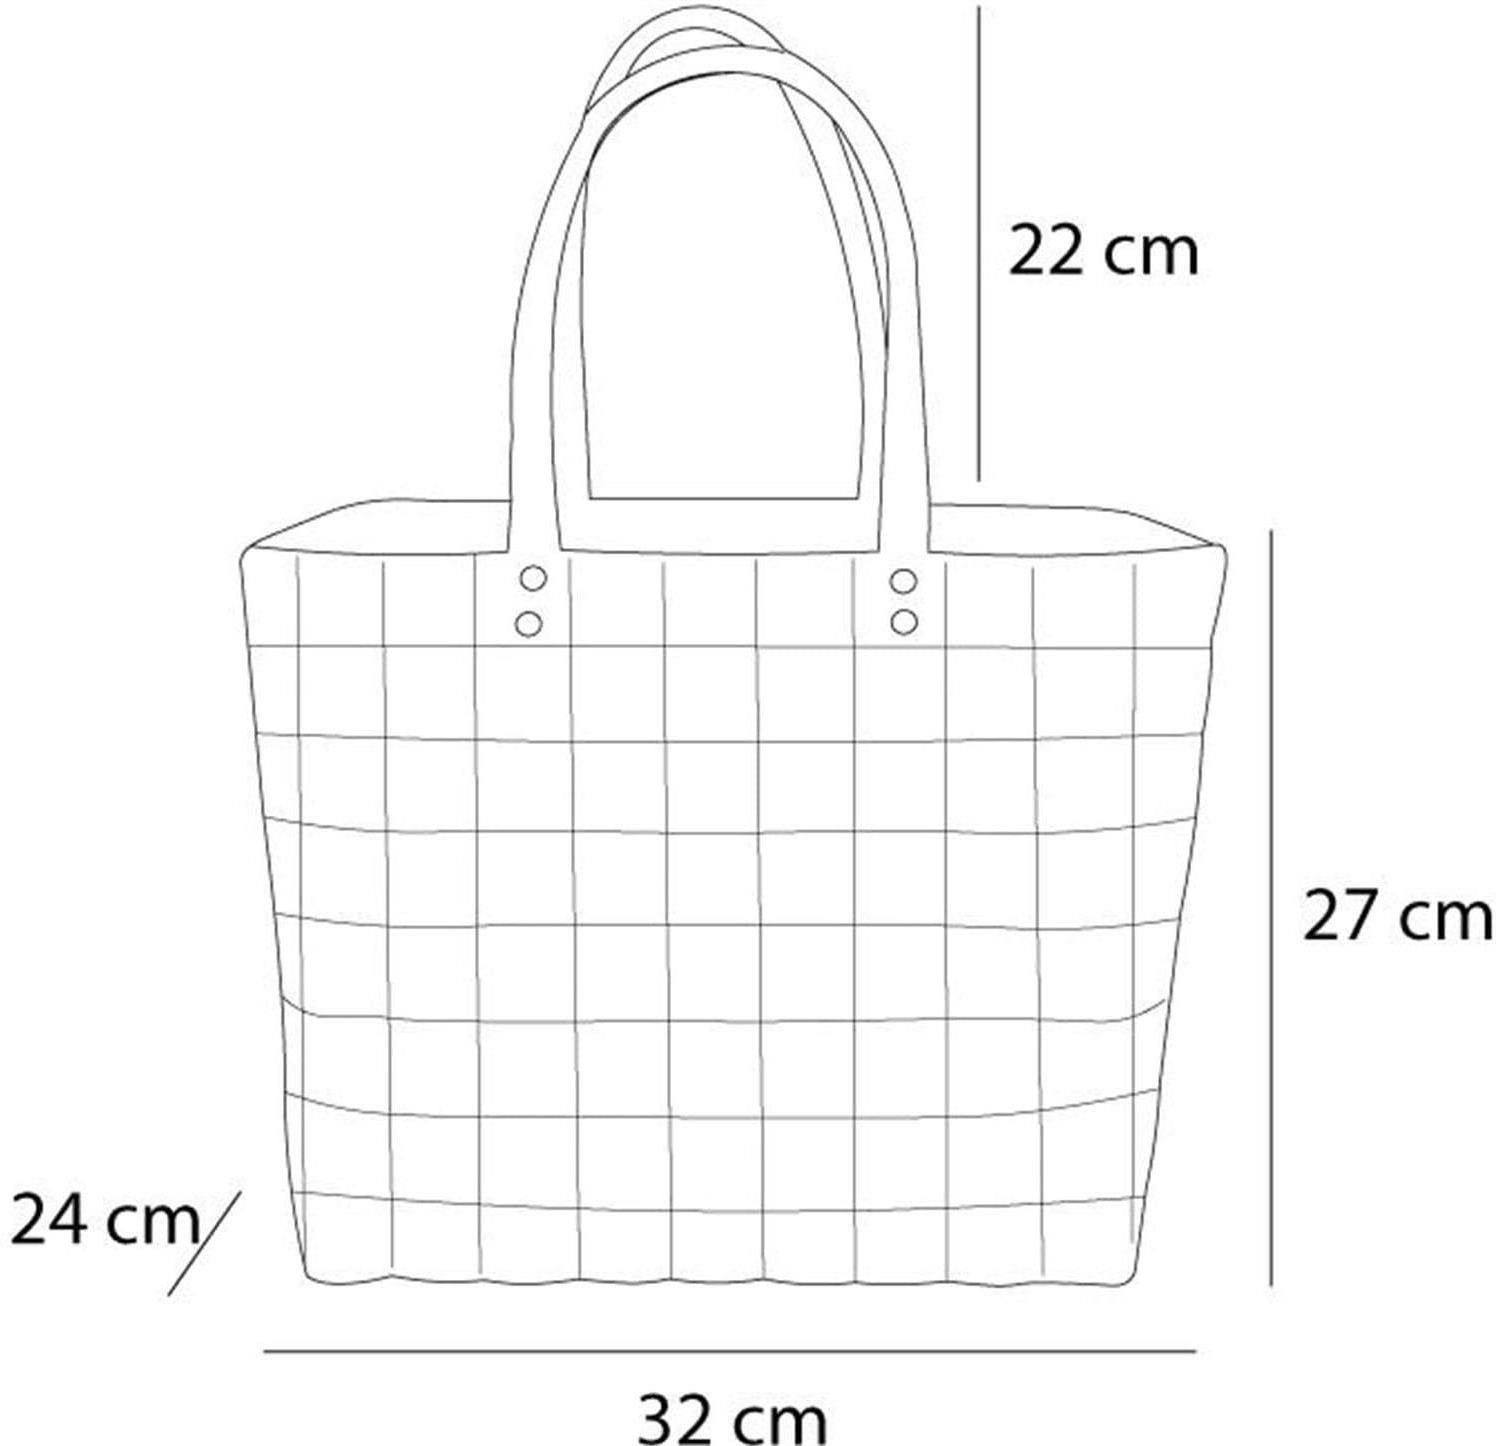 normani pflegeleichtem Kunststoff, Dusty Pink Einkaufstasche aus Material Flechtkorb Einkaufskorb l, 20 aus Einkaufskorb